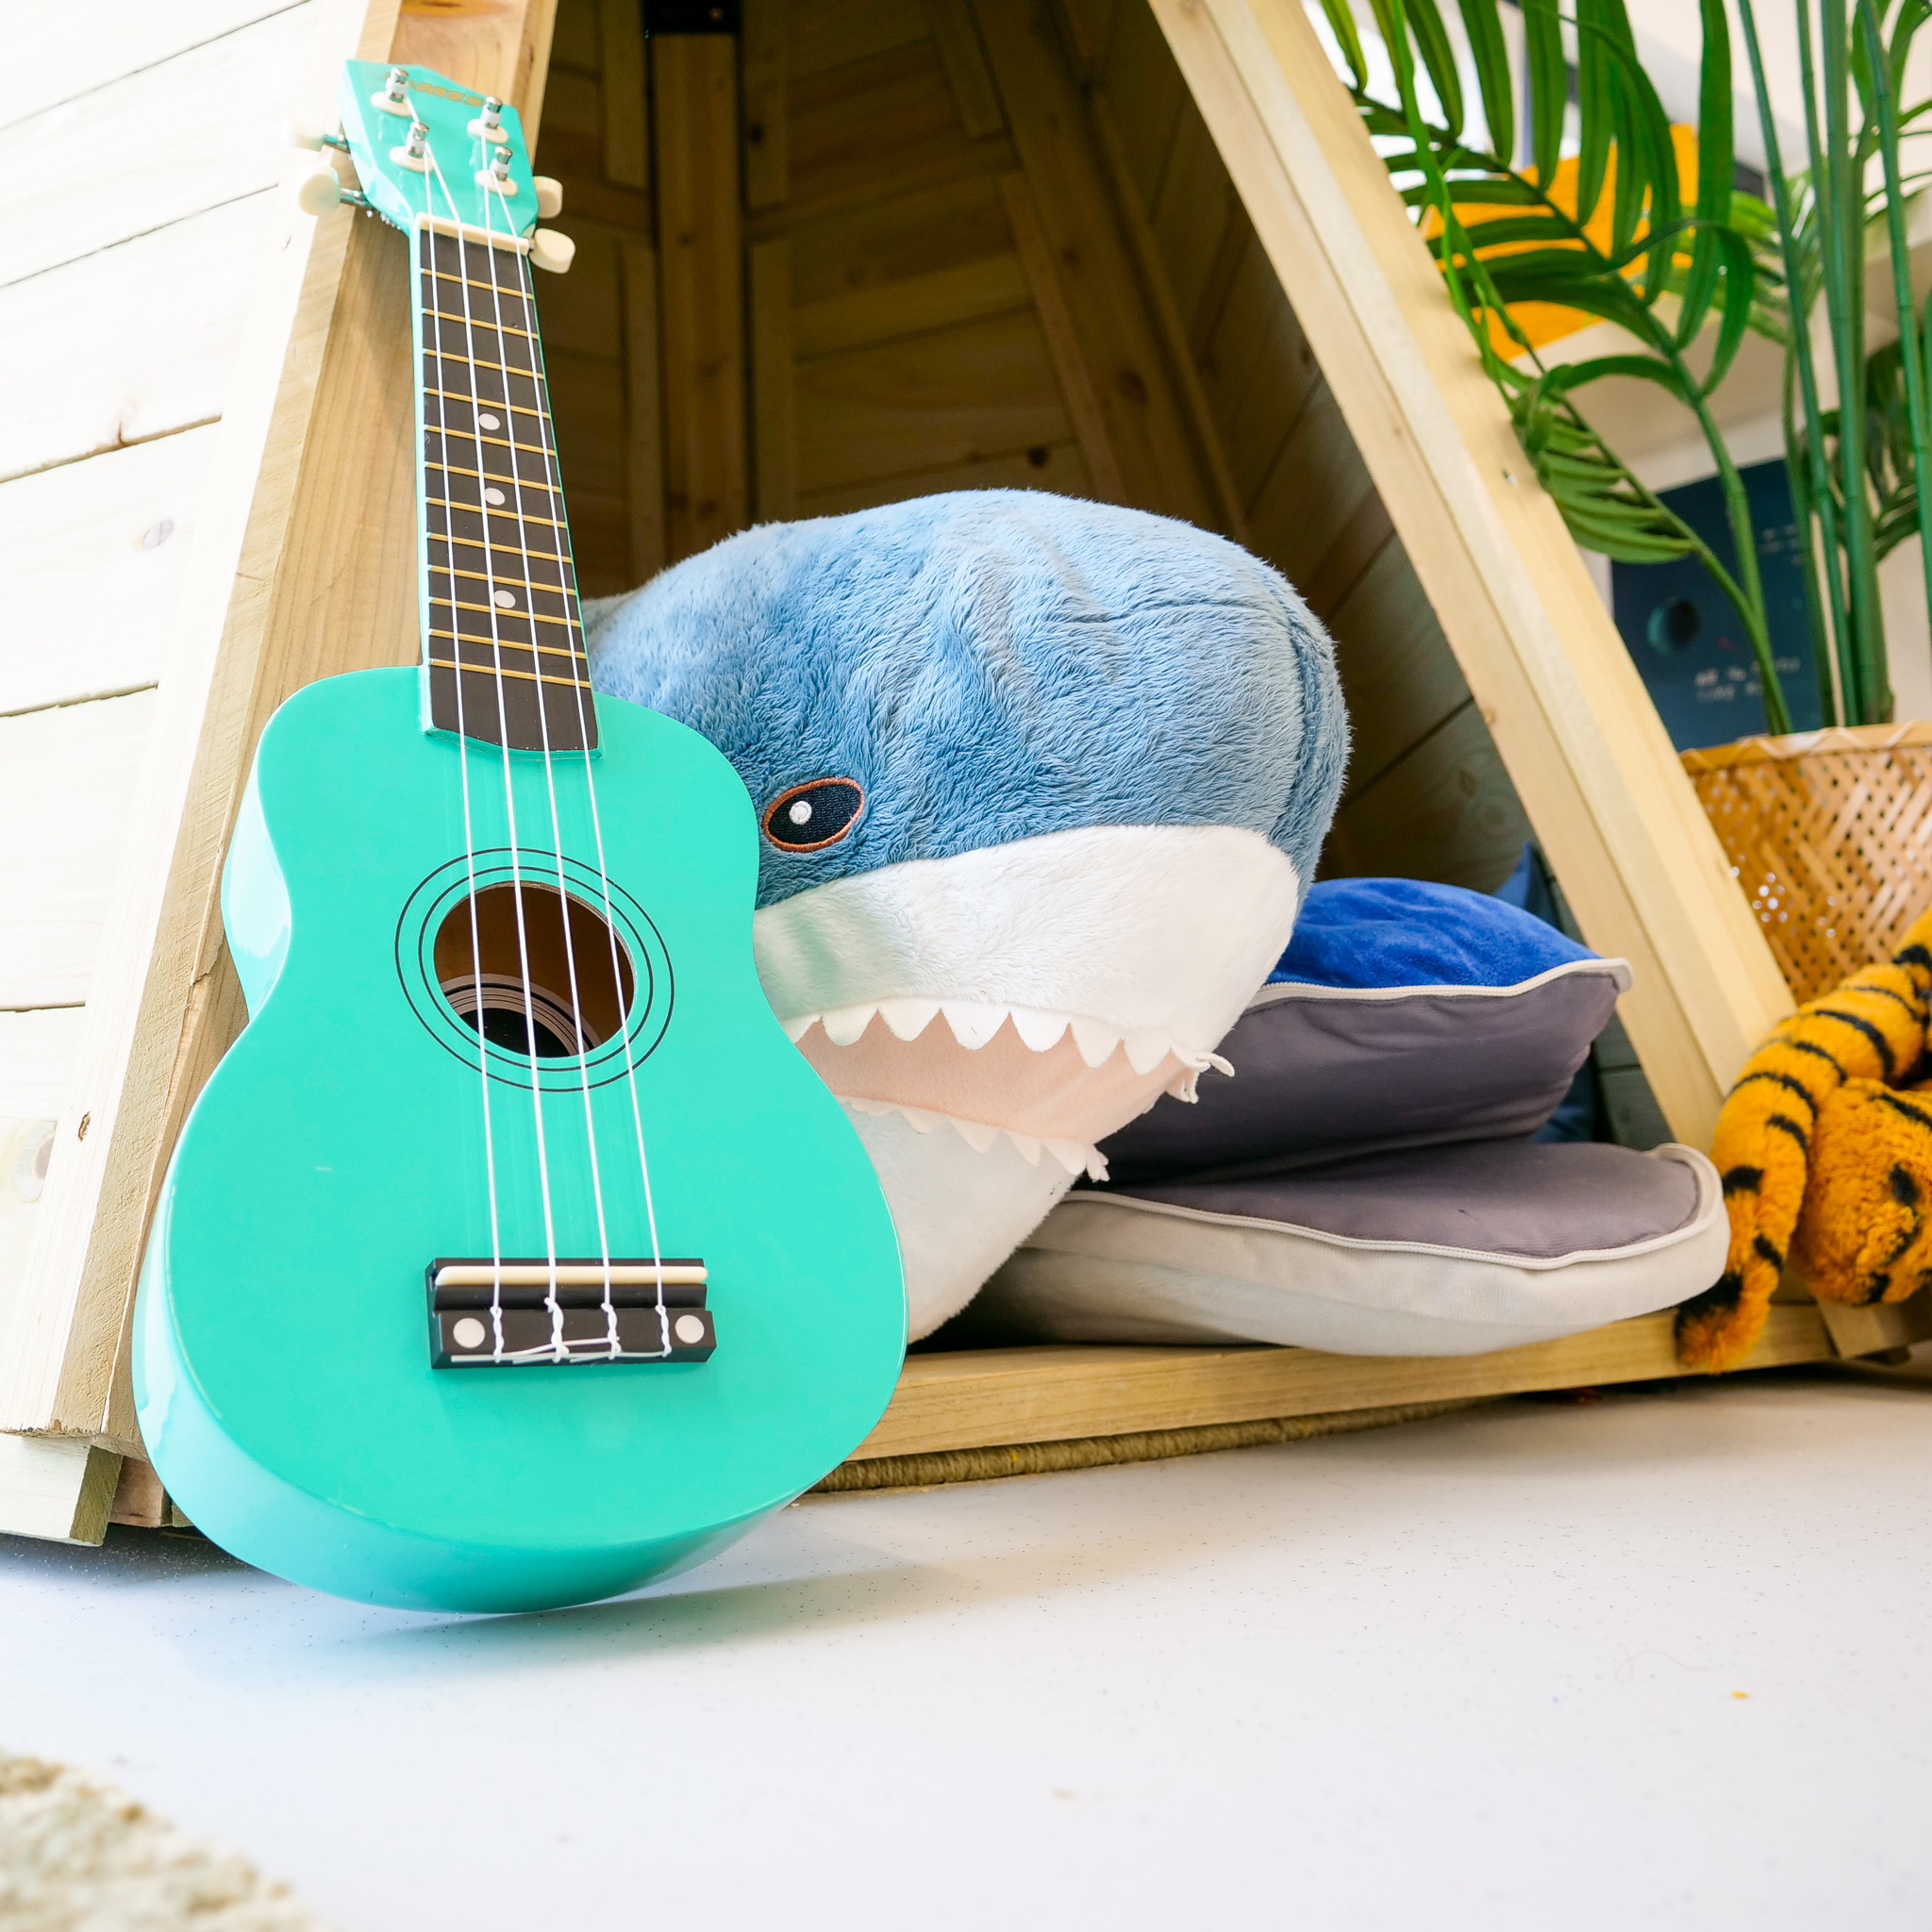 Ukuele with cuddle toy sharks